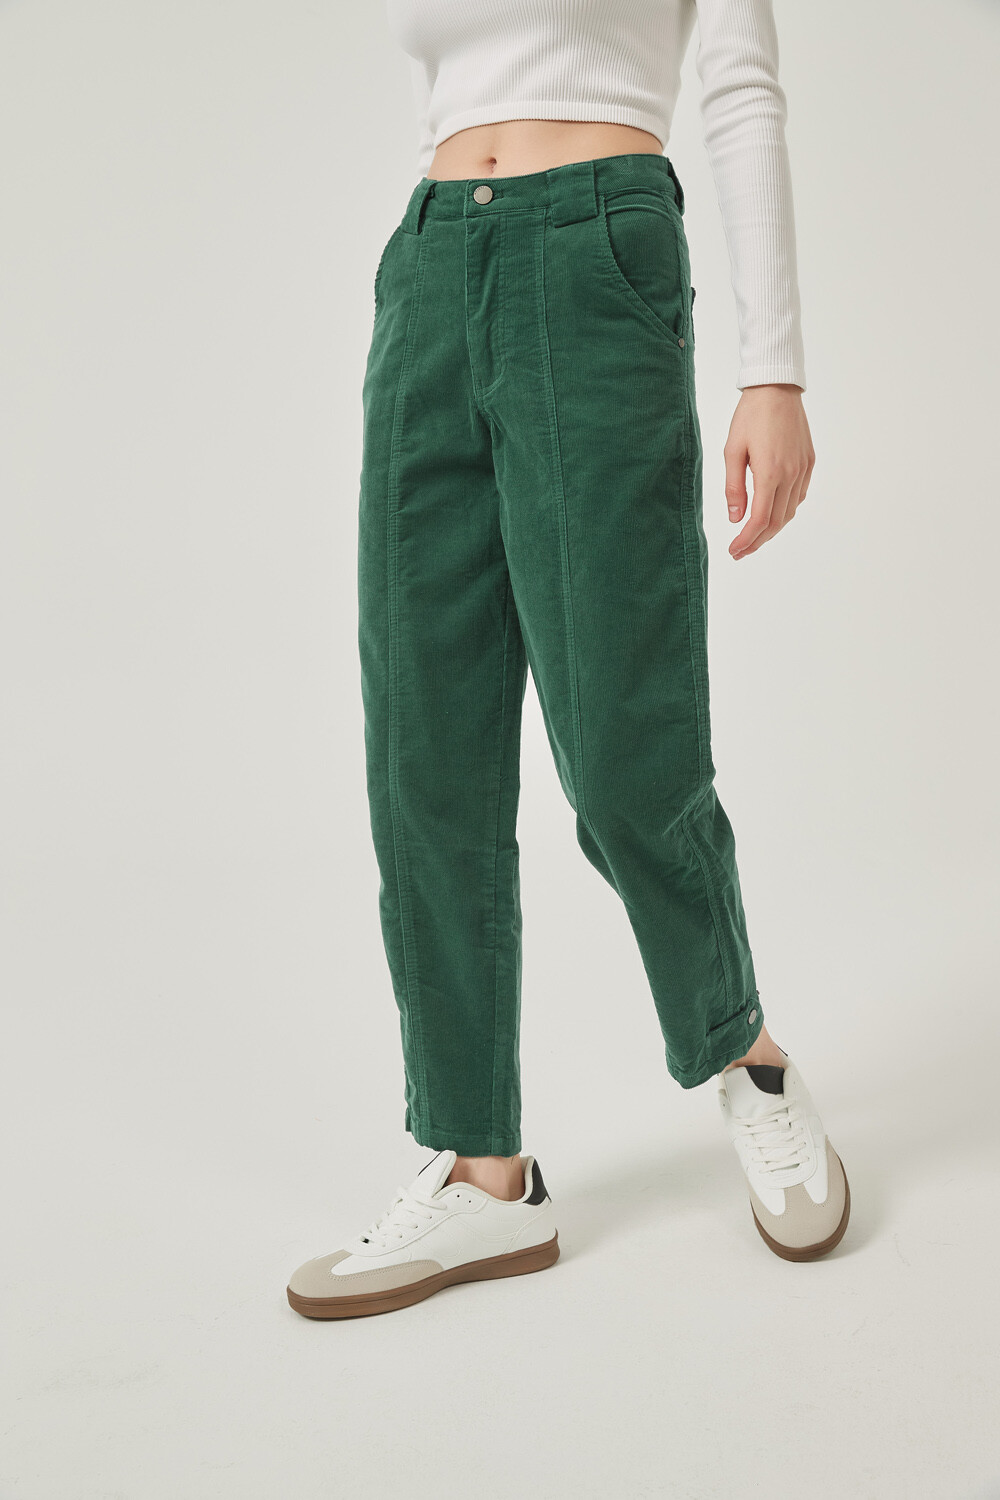 Pantalon Espar Verde Azulado